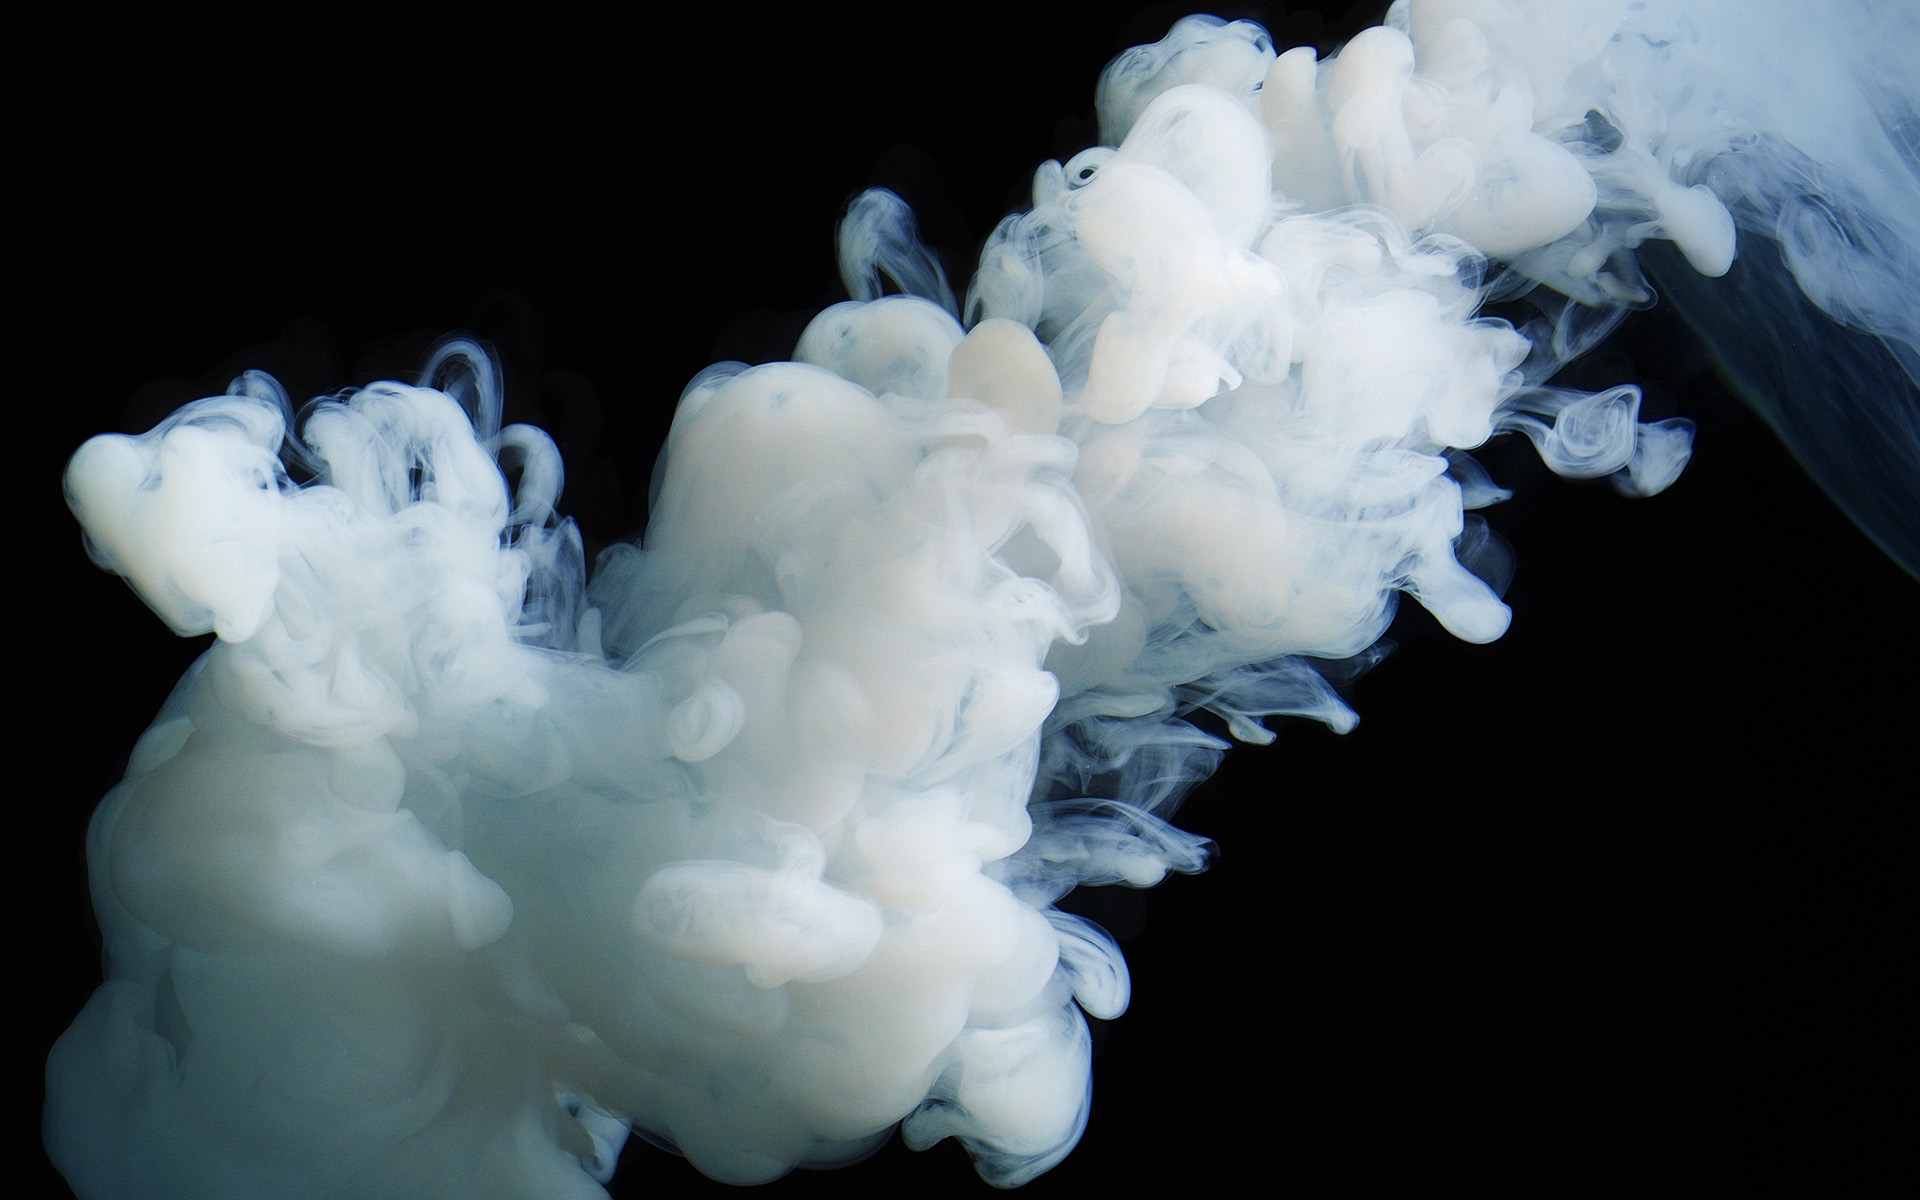 ink in water wallpaper hd,smoke,cloud,formation